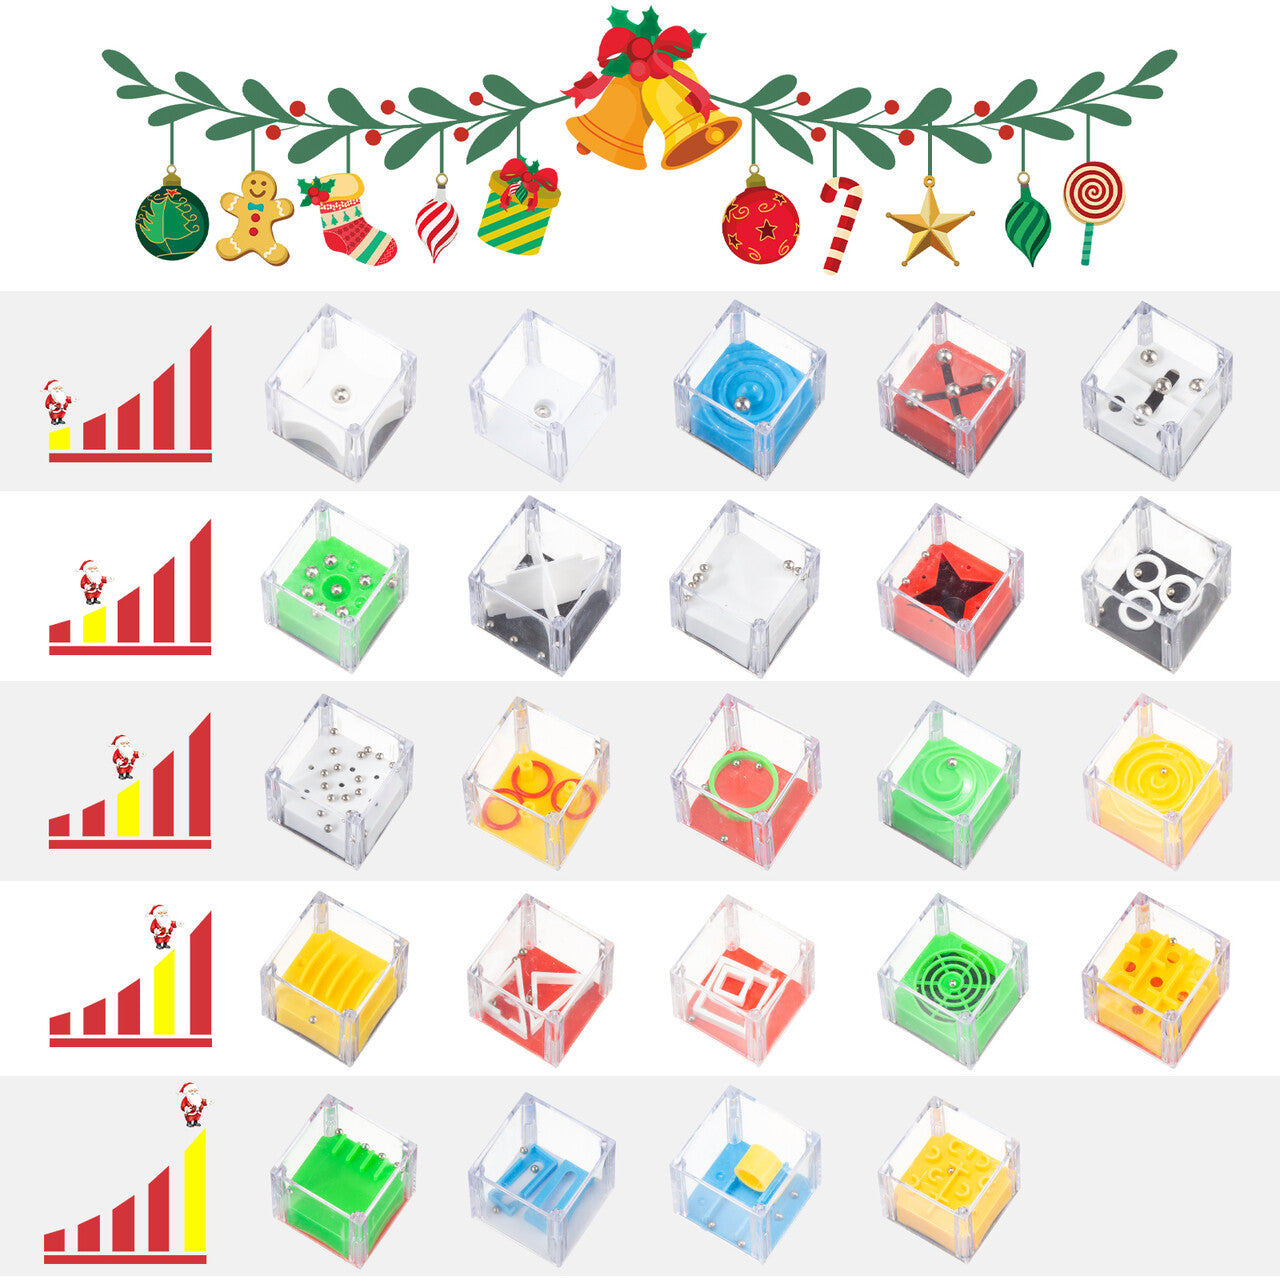 【Christmas sale】24 Days of Christmas Balance Maze Challenge Kit